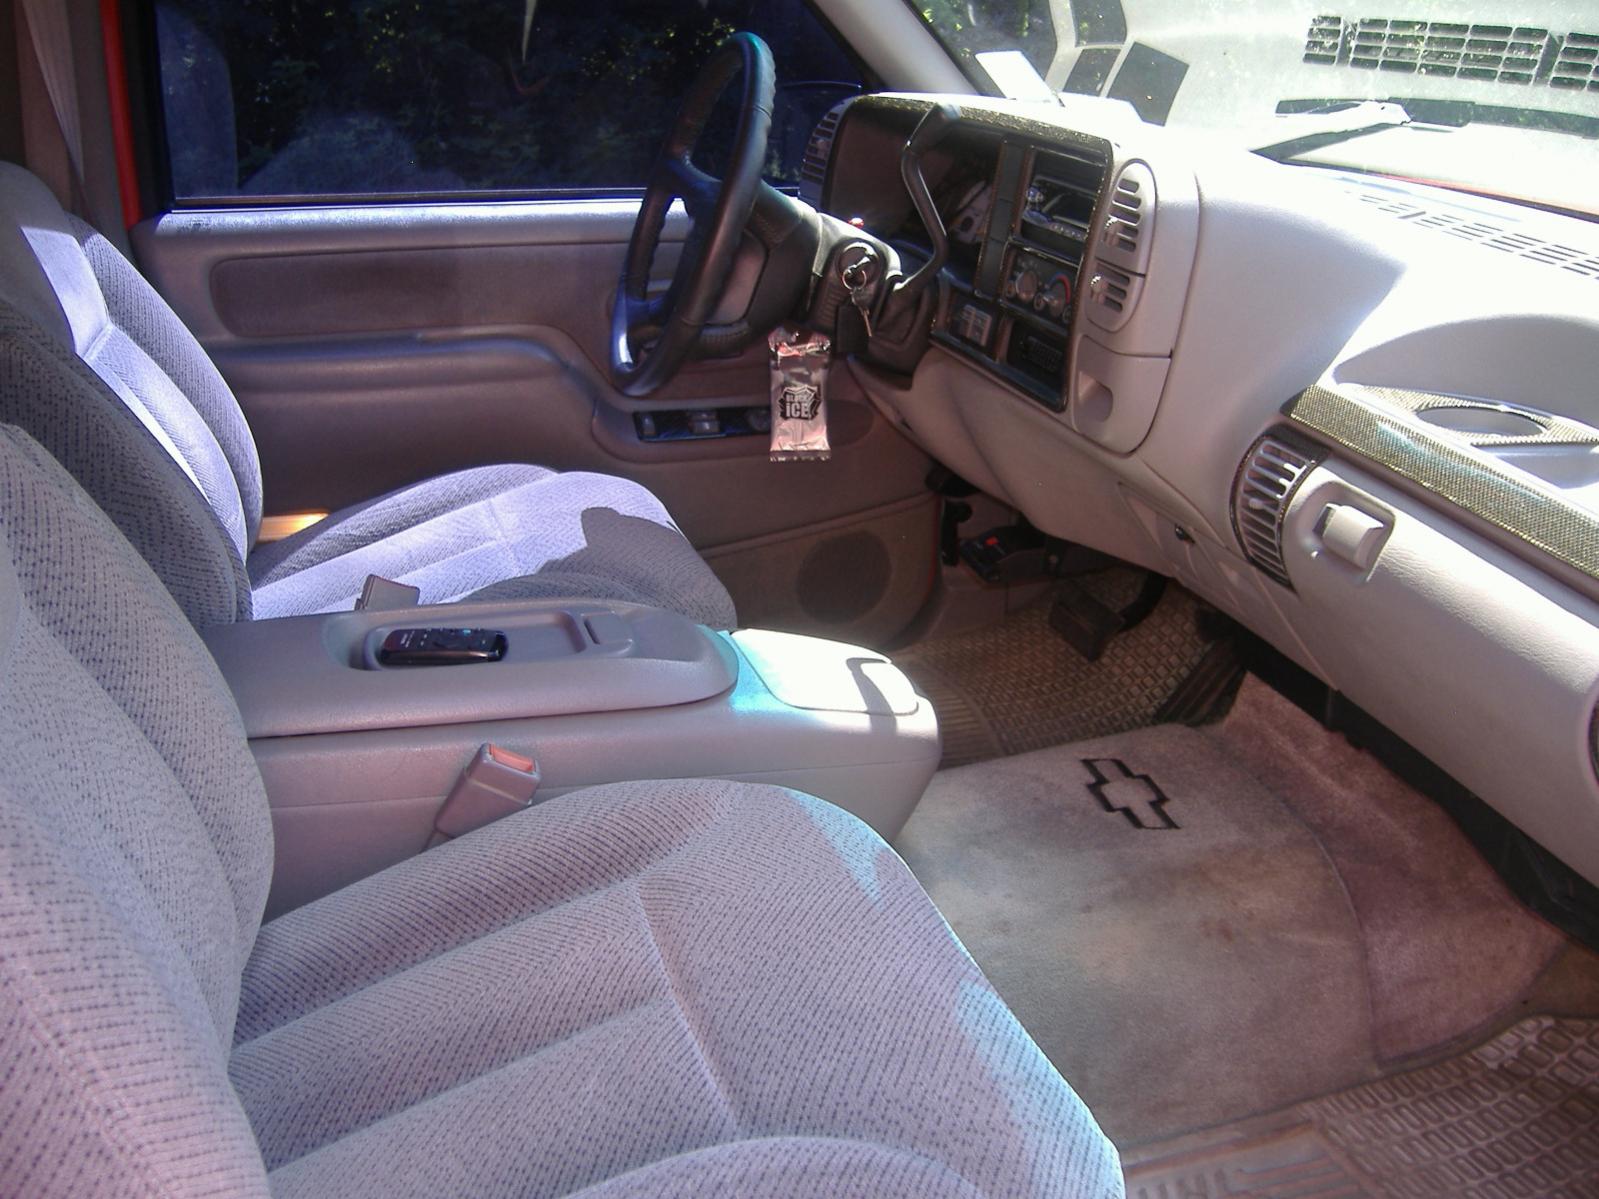 1996 Chevy Tahoe 2 Door 5 7 Mint Ls1tech Camaro And